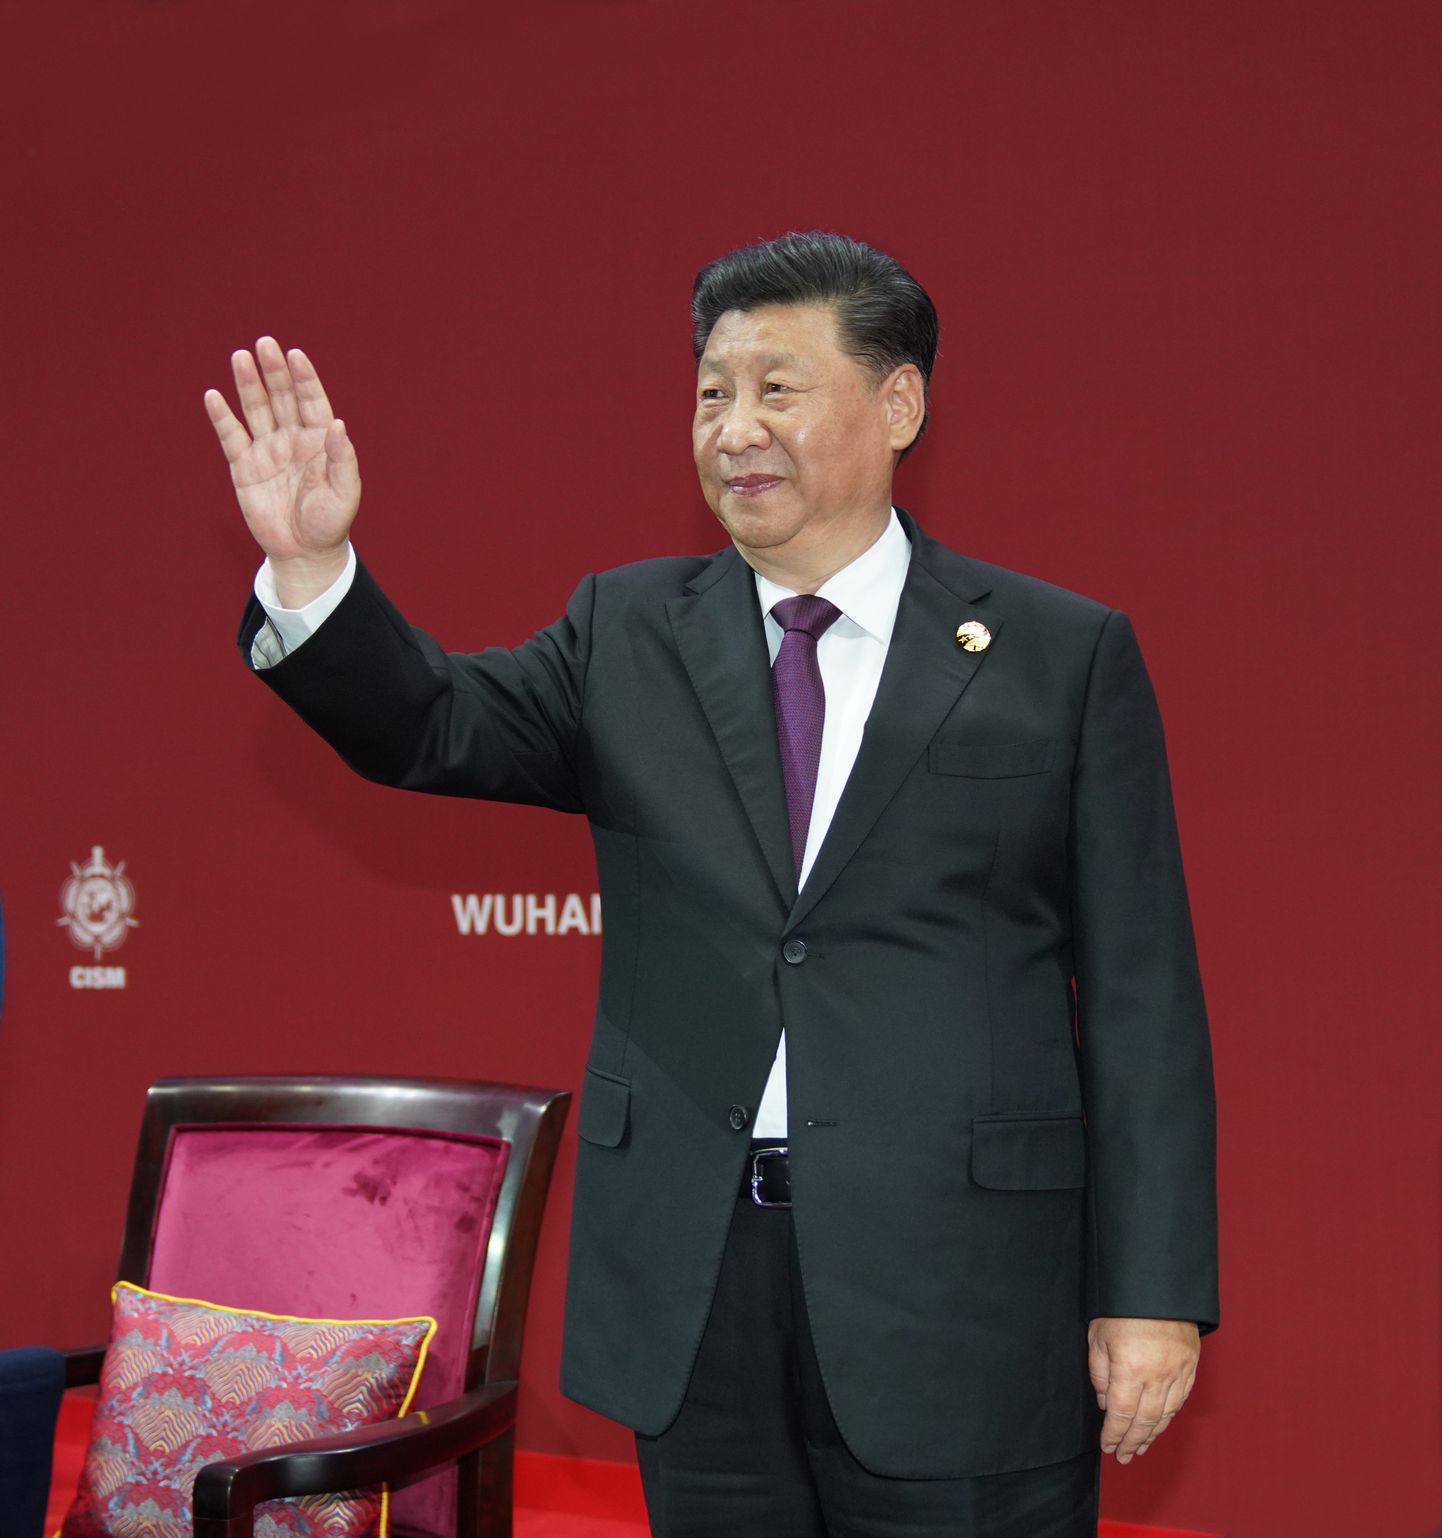 Hiina president ja Kommunistliku Partei peasekretär Xi Jinping  Wuhani sõjaväelaste maailmamängude avatseremoonial.